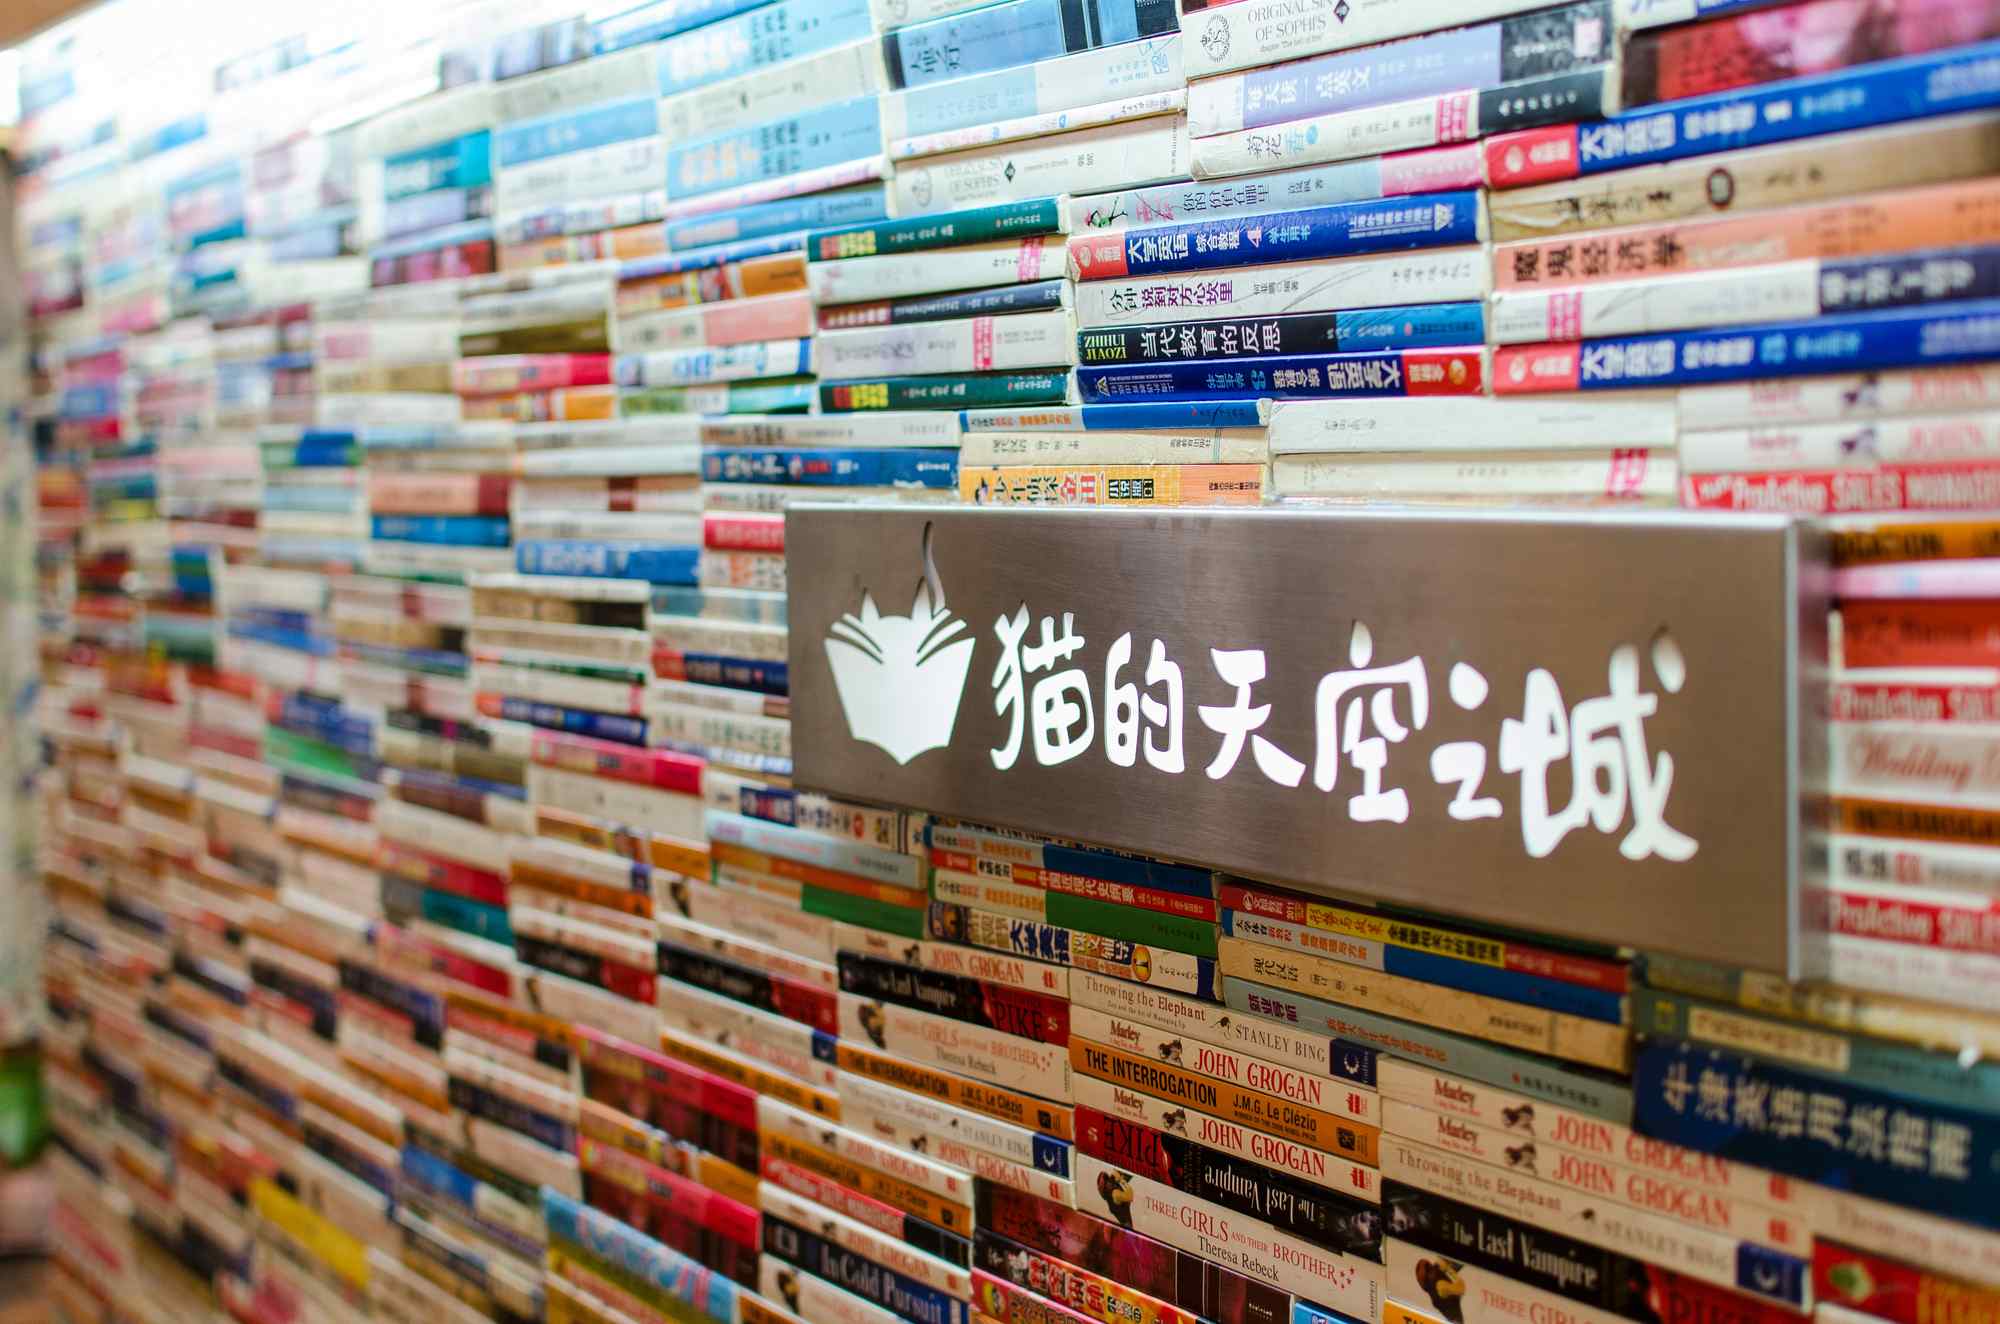 苏州山塘街文艺书店猫的天空之城桌面壁纸